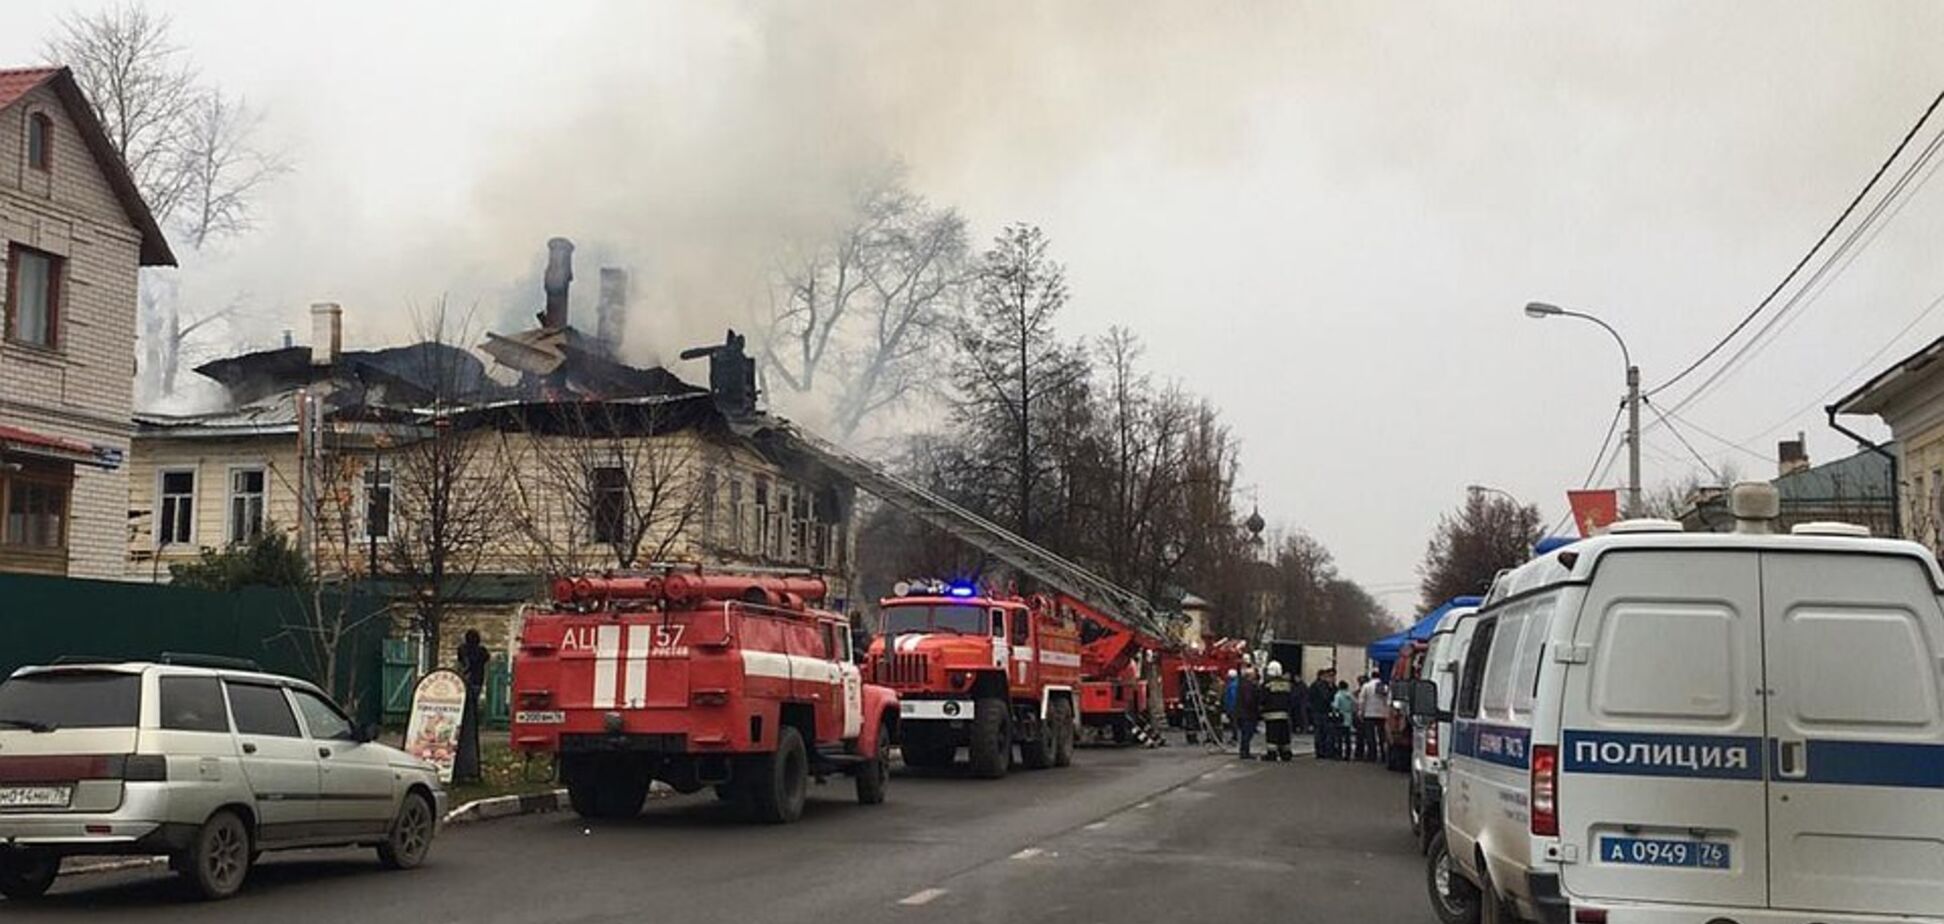 'Совсем крохи': в России заживо сгорели пятеро детей